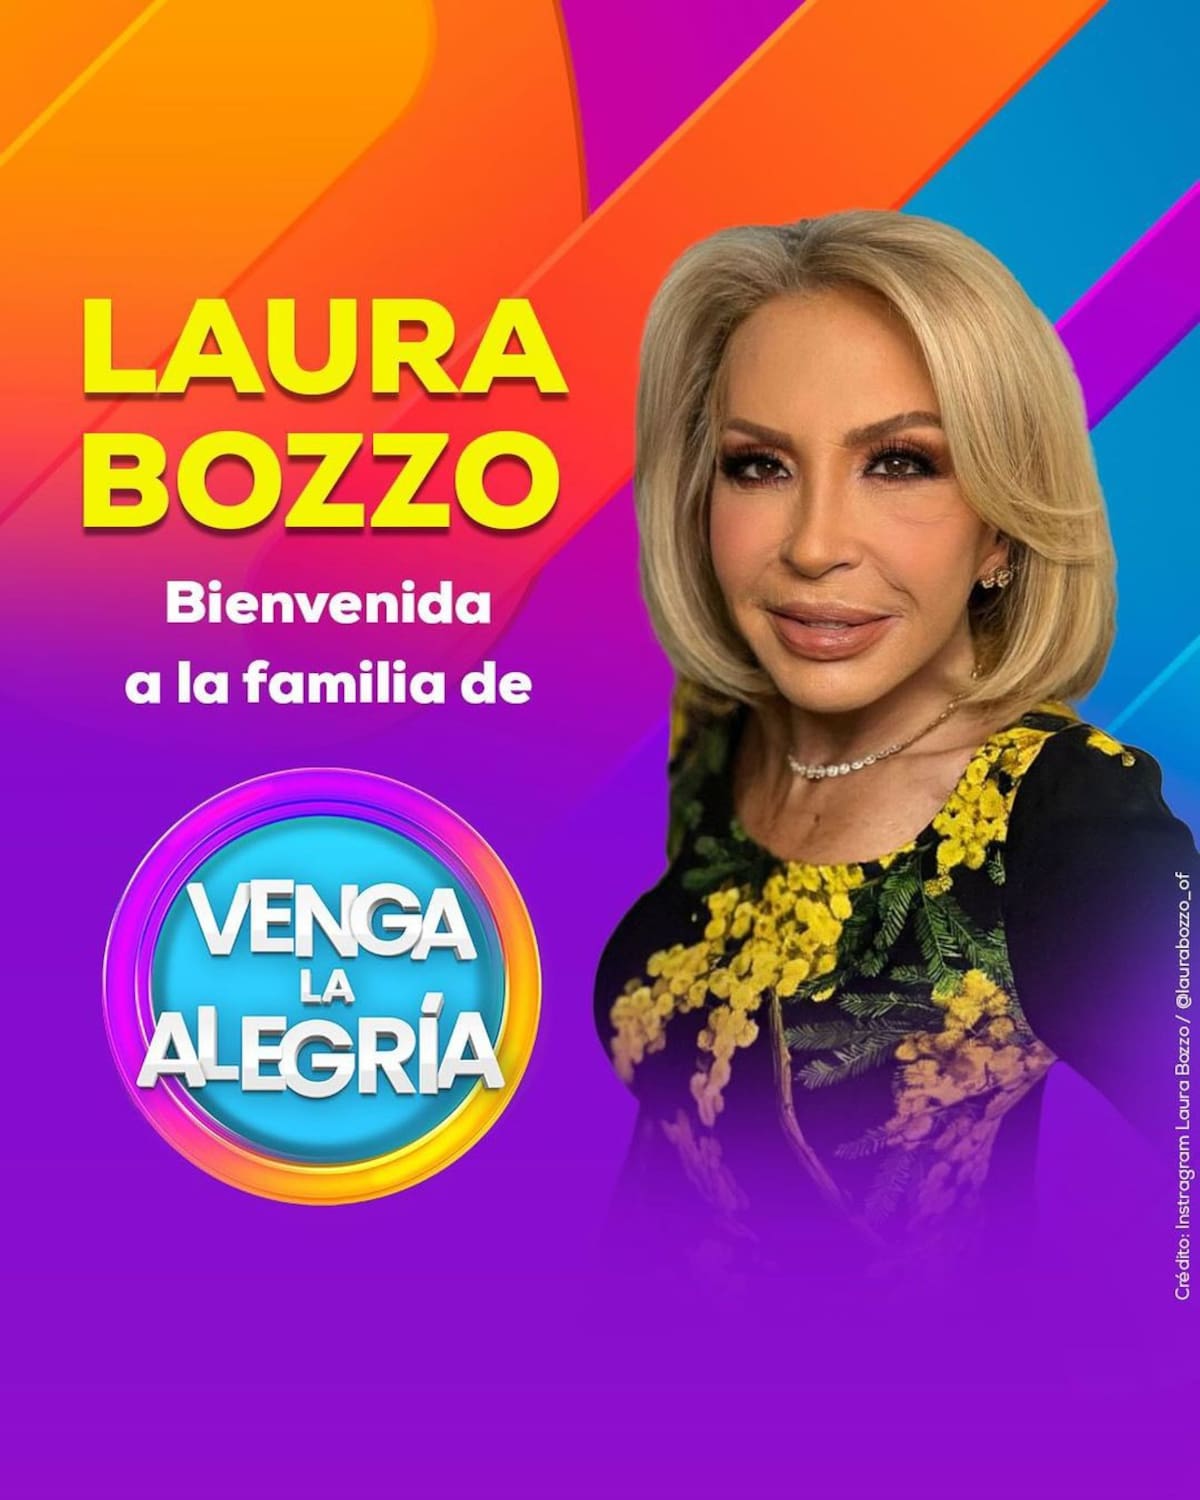 Laura Bozzo es la nueva conductora de 'Venga la Alegría' / Redes Sociales: qvengalaalegria